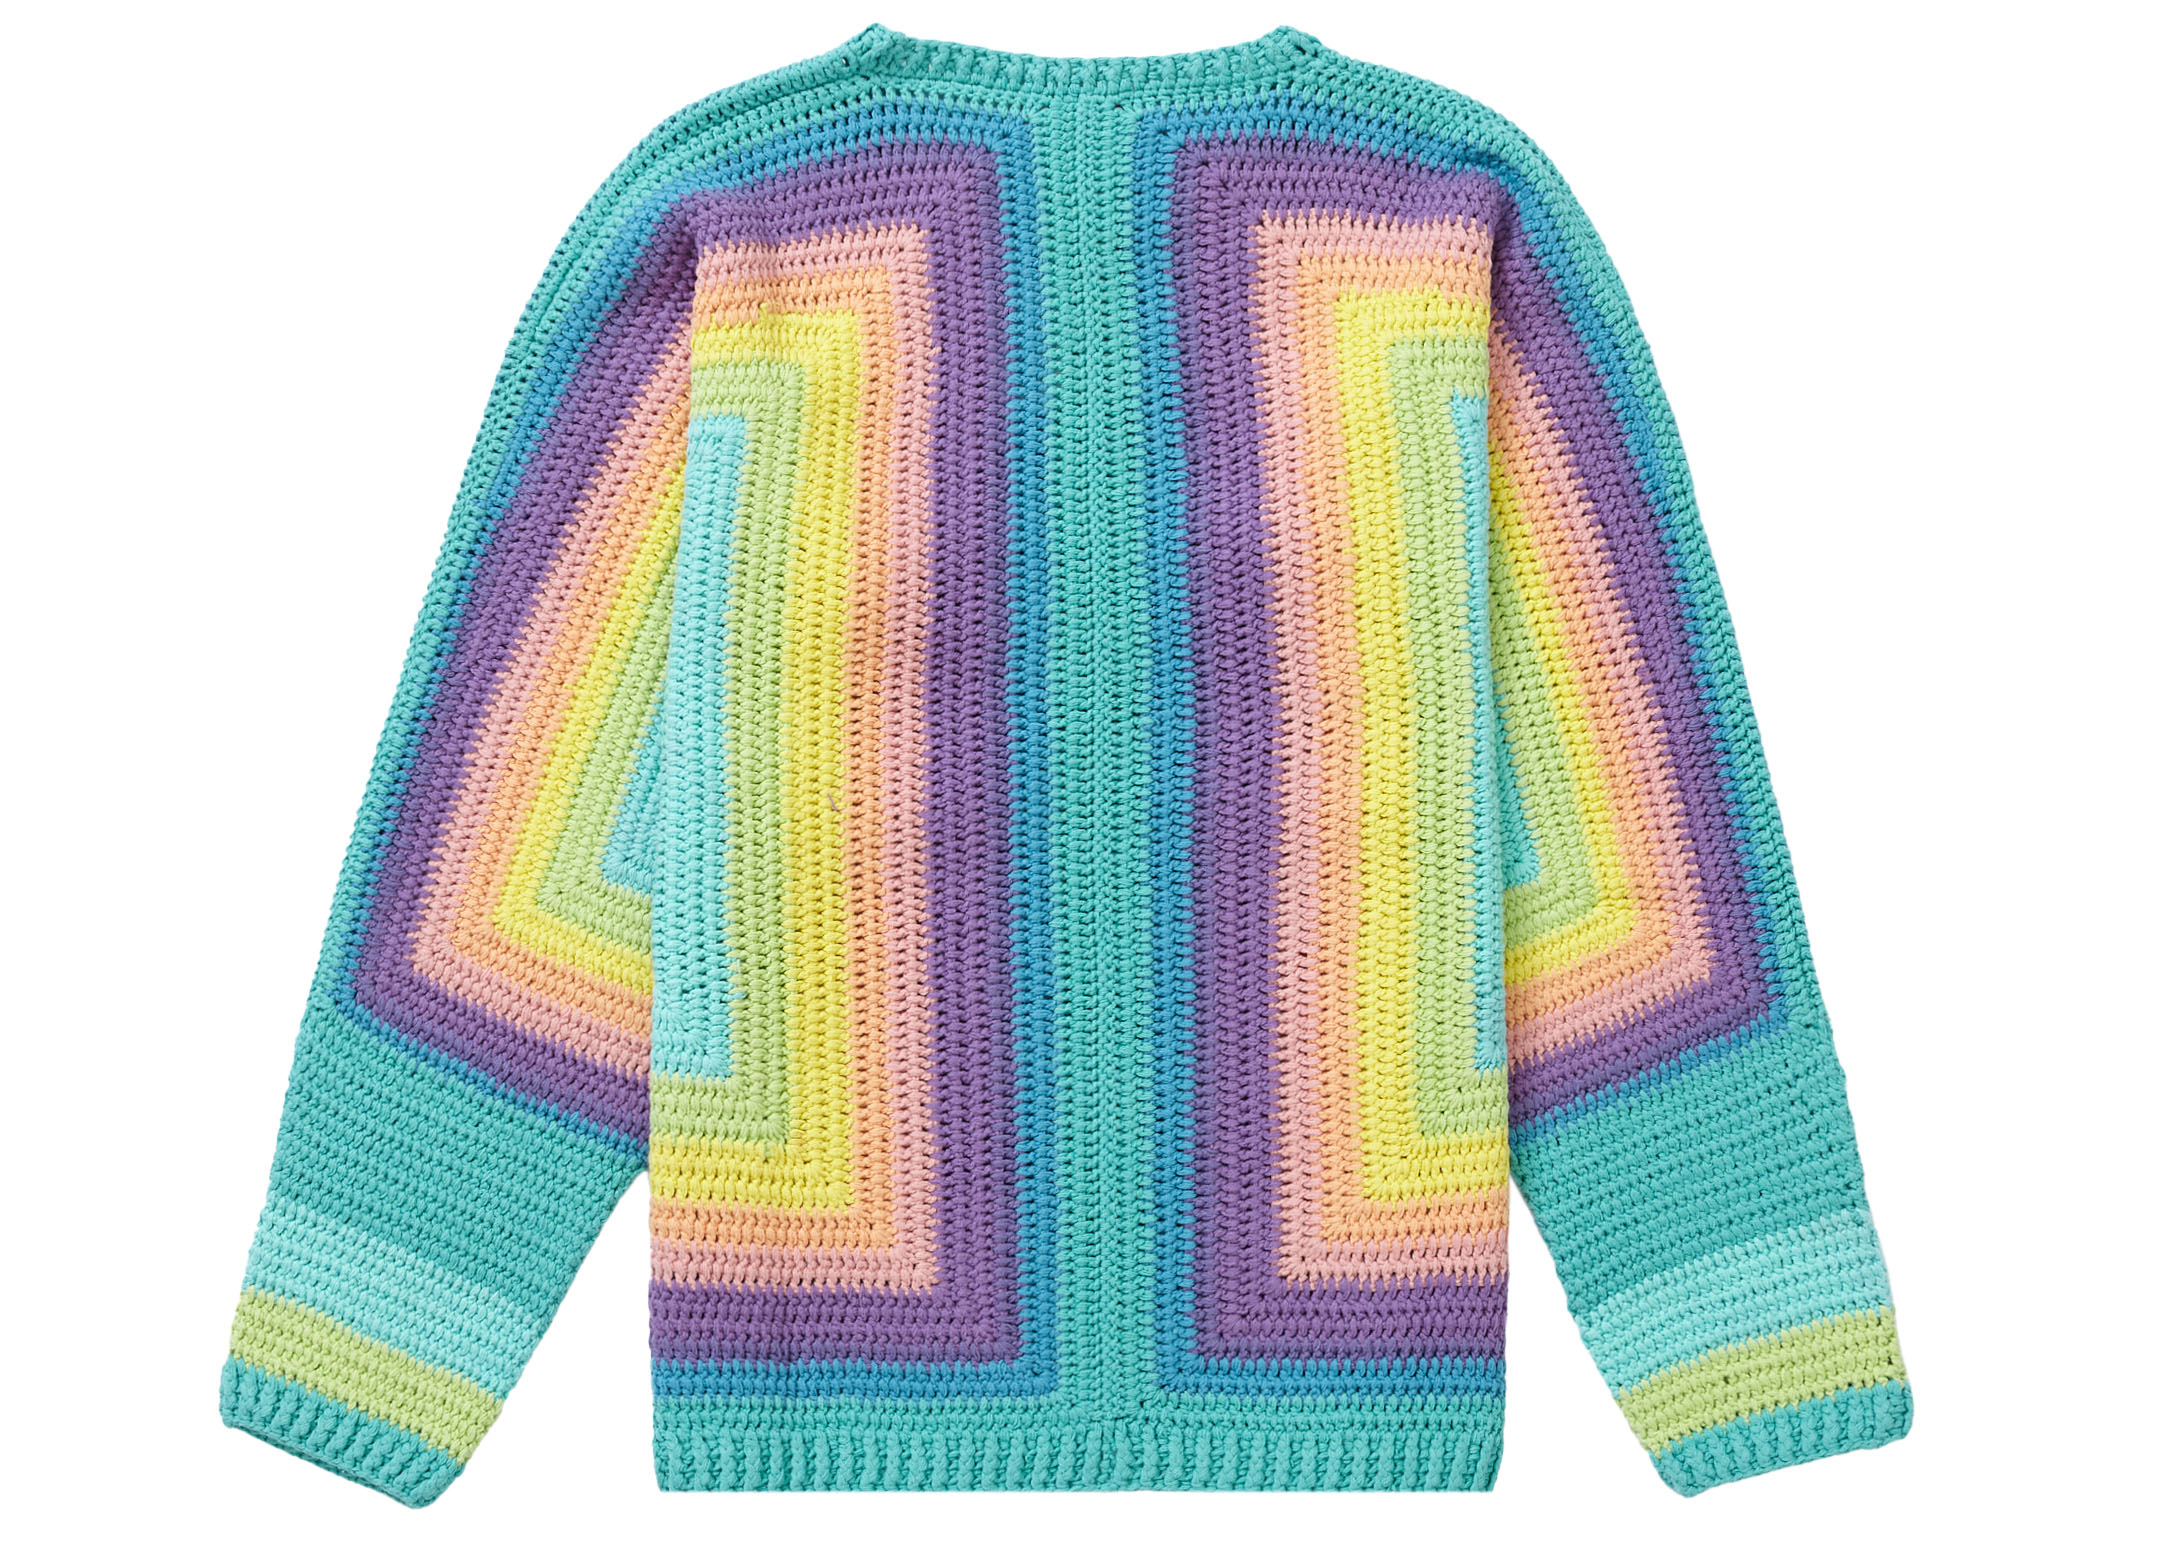 Supreme Hand Crocheted Sweater Multicolor